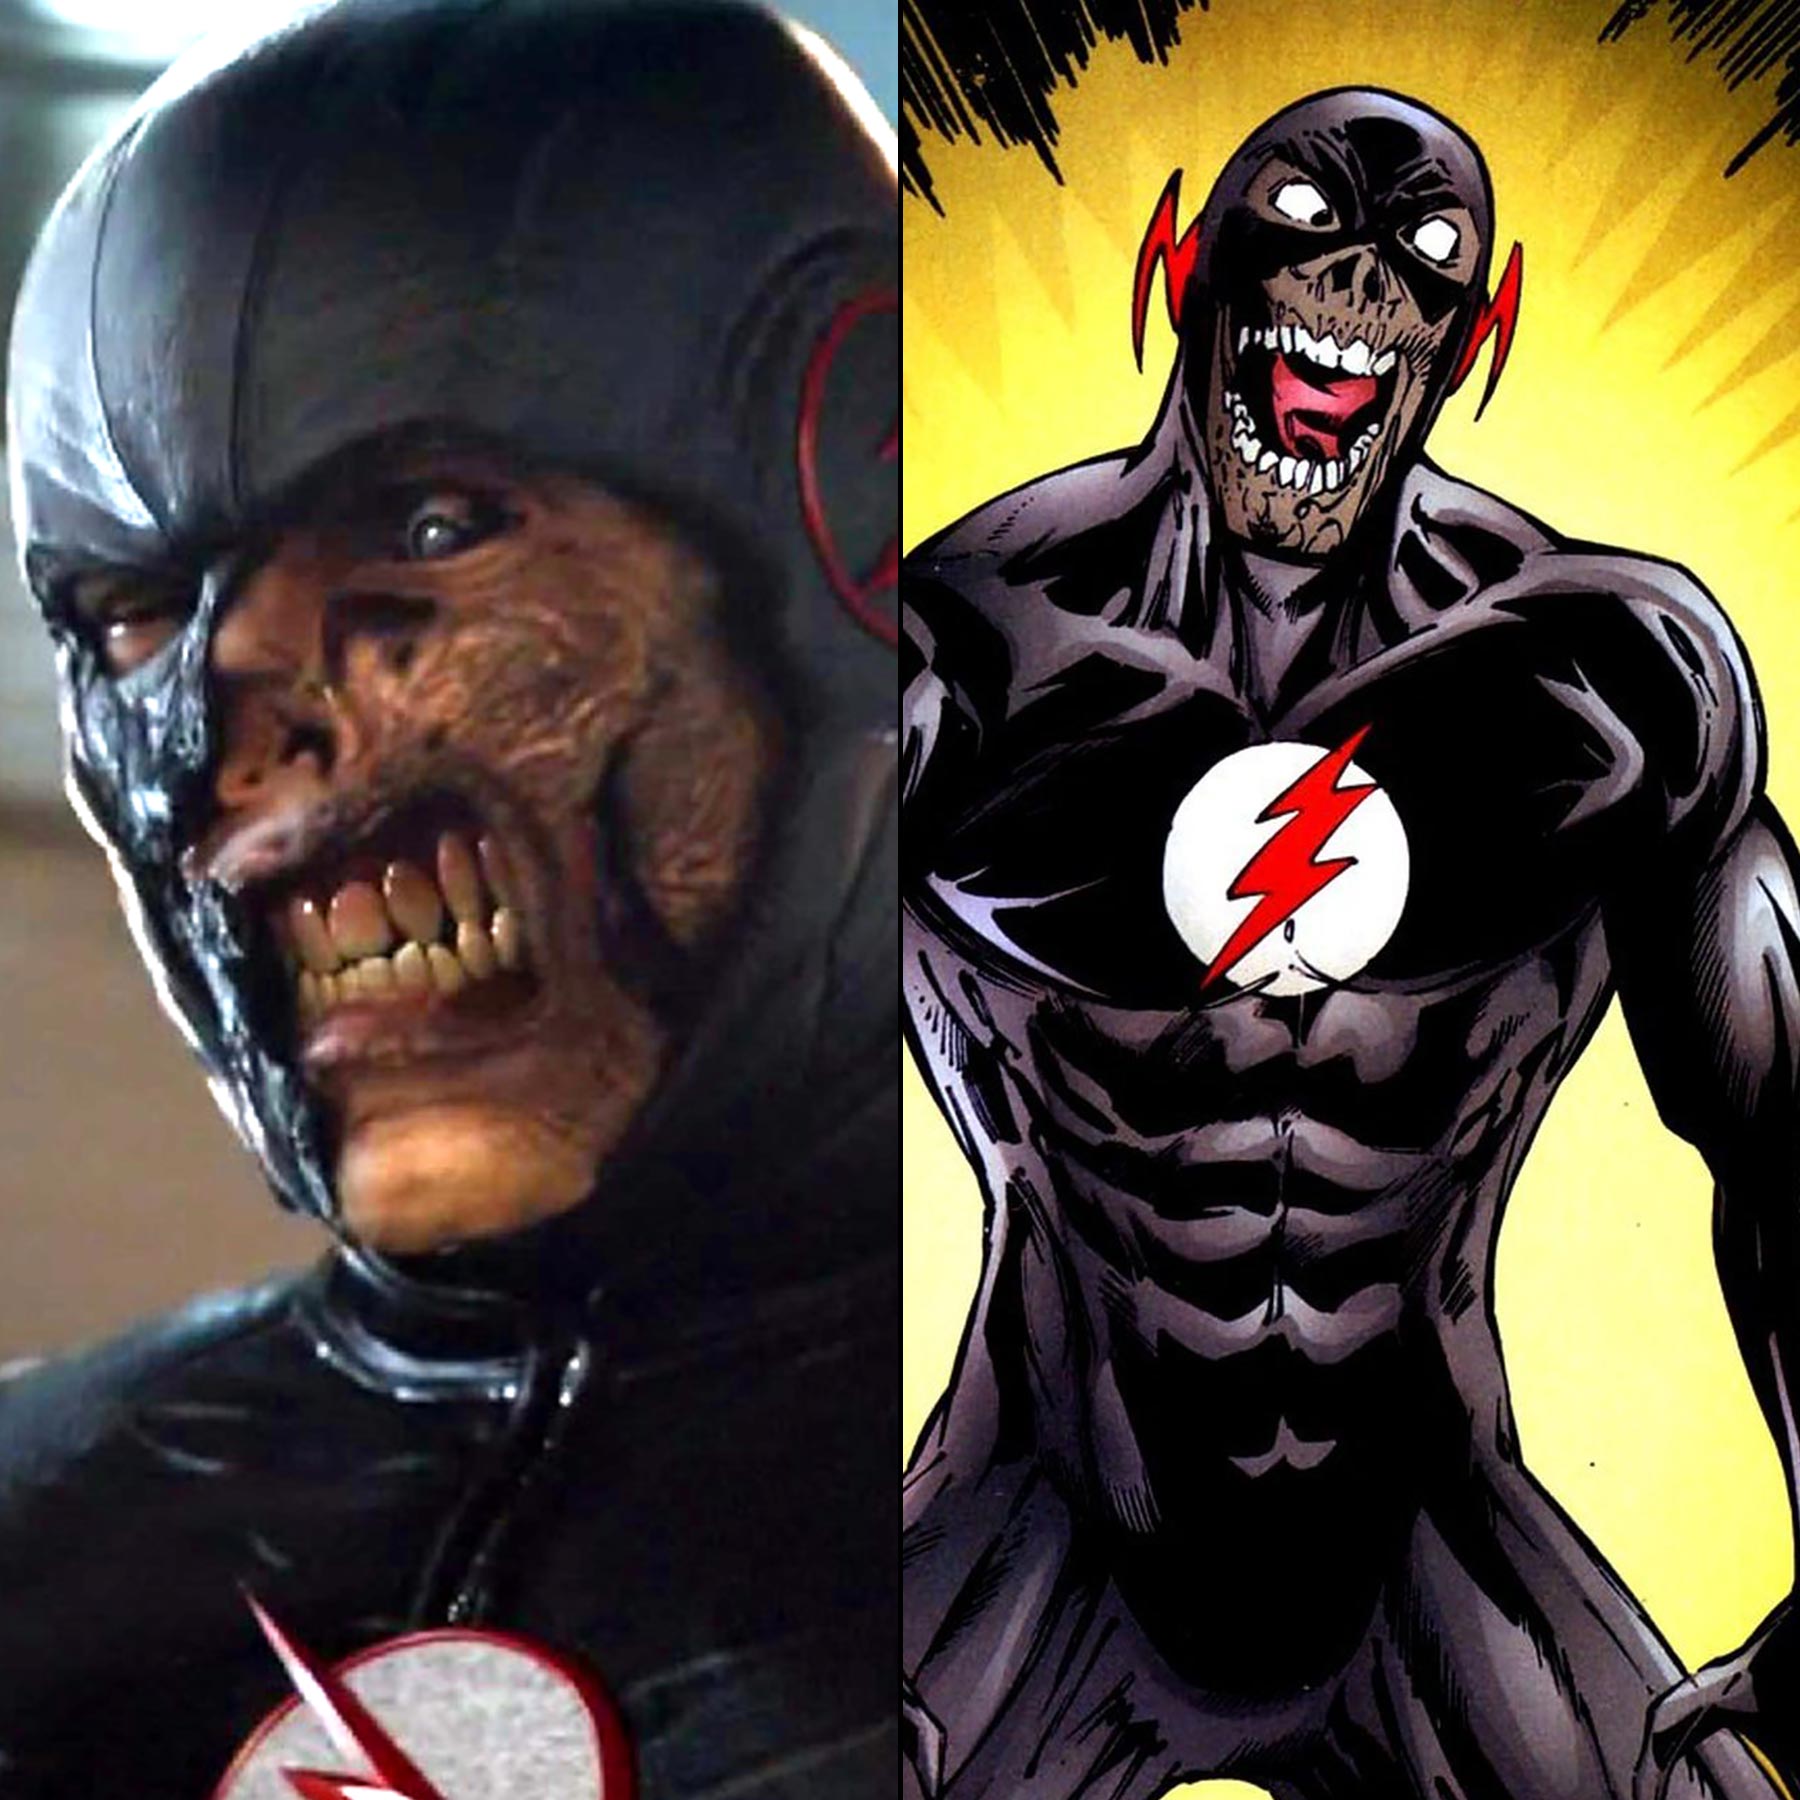 Lire la suite à propos de l’article Black Flash dans The Flash ?